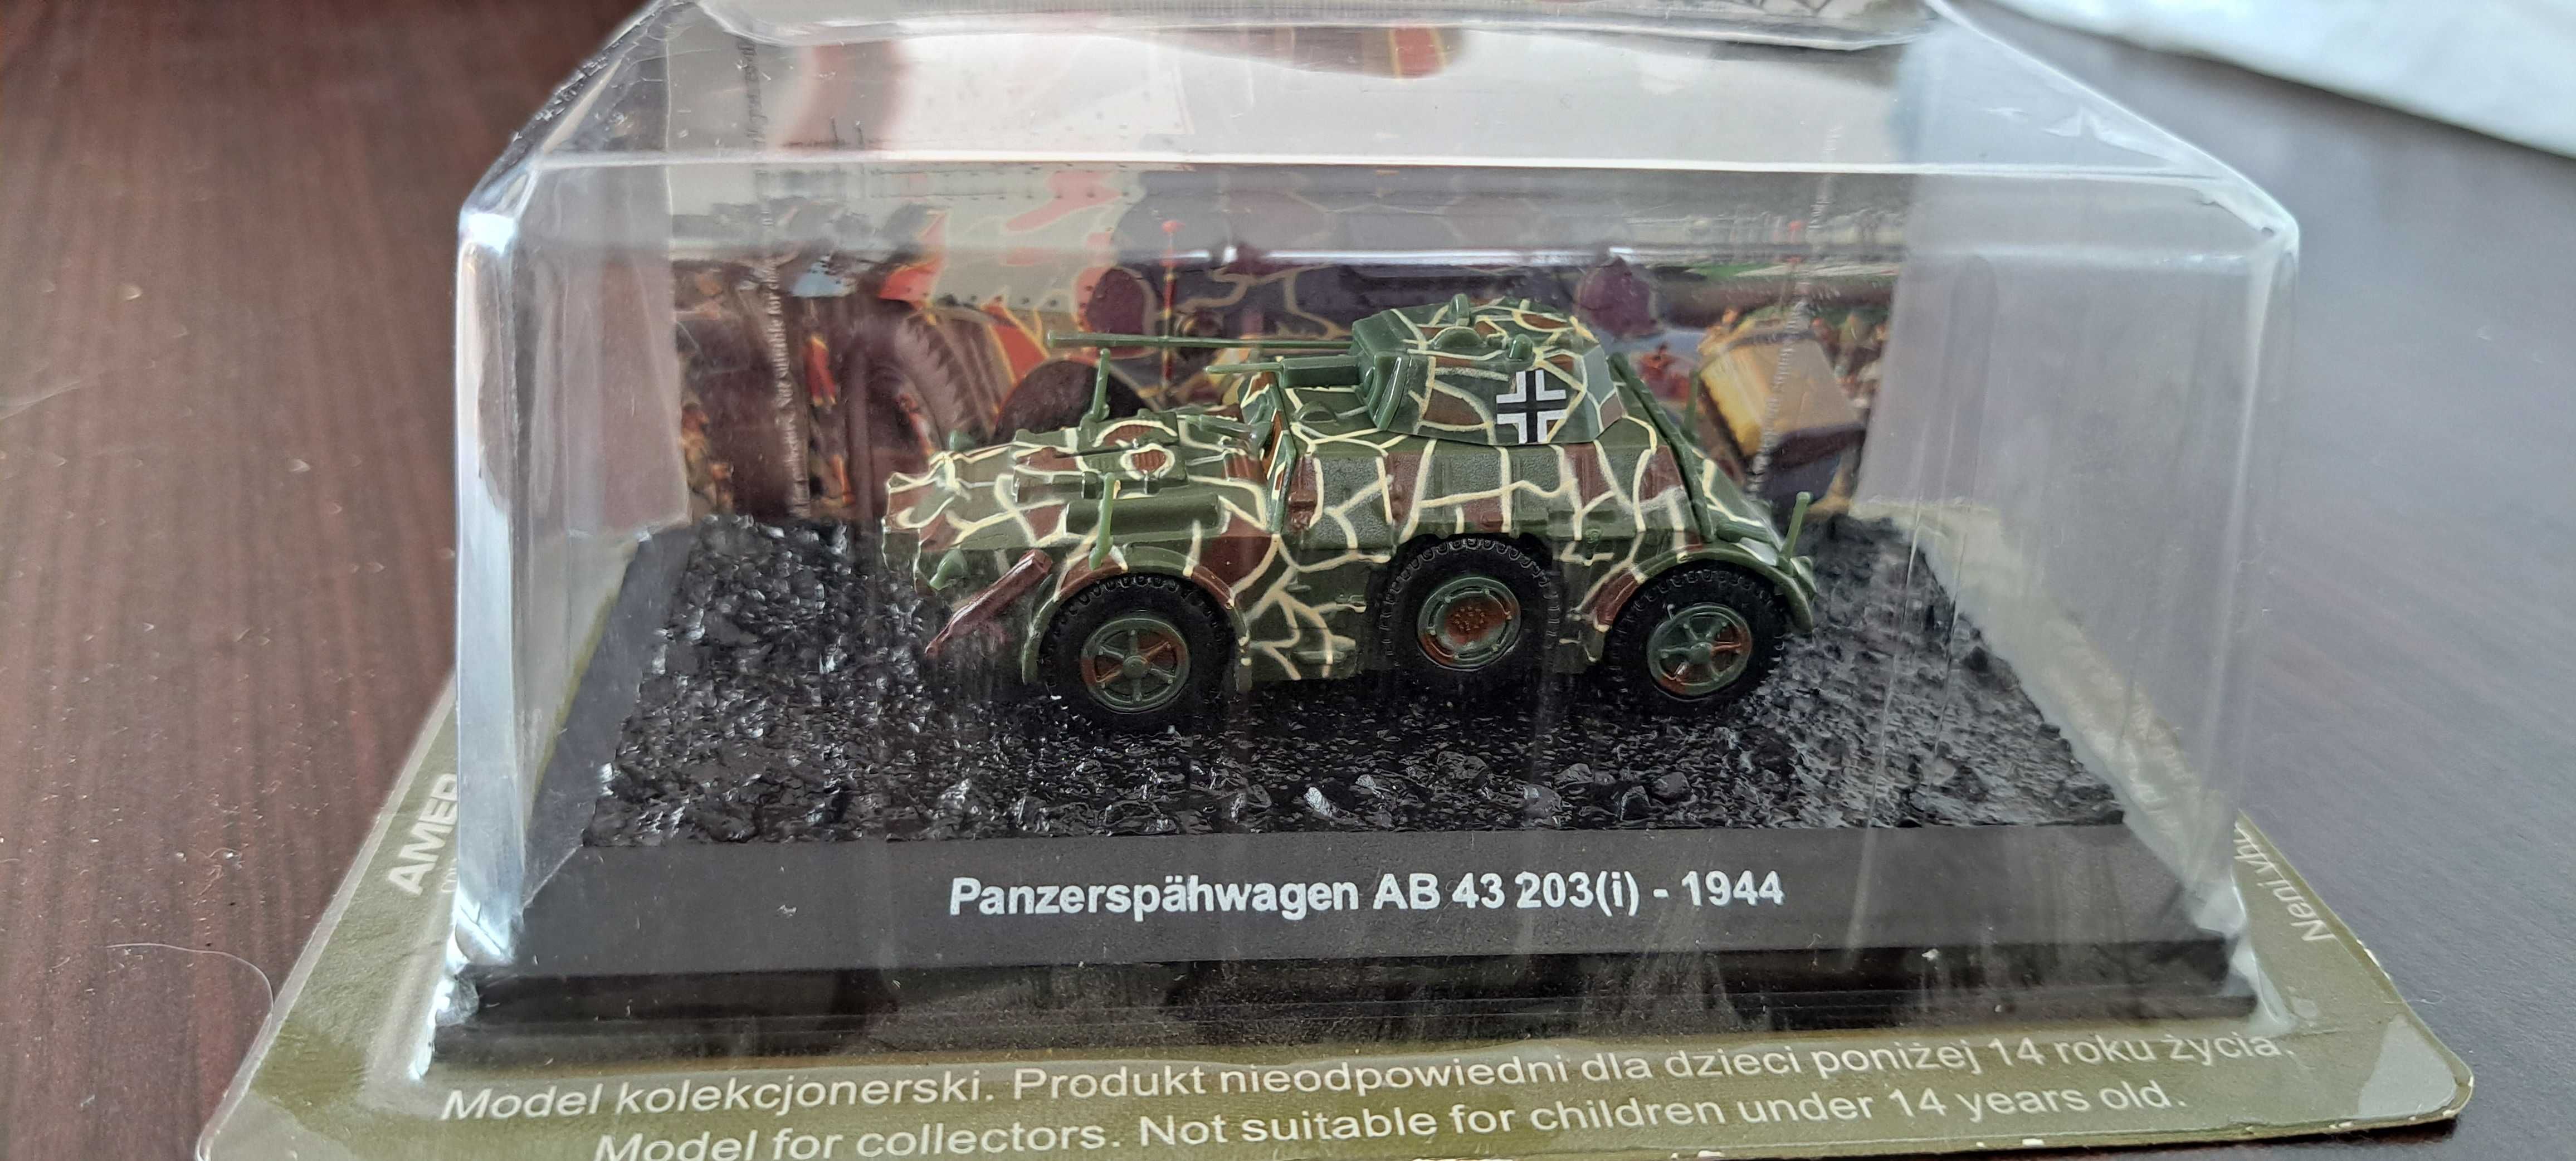 Panzerspahwagen AB43 203(i) - 1944